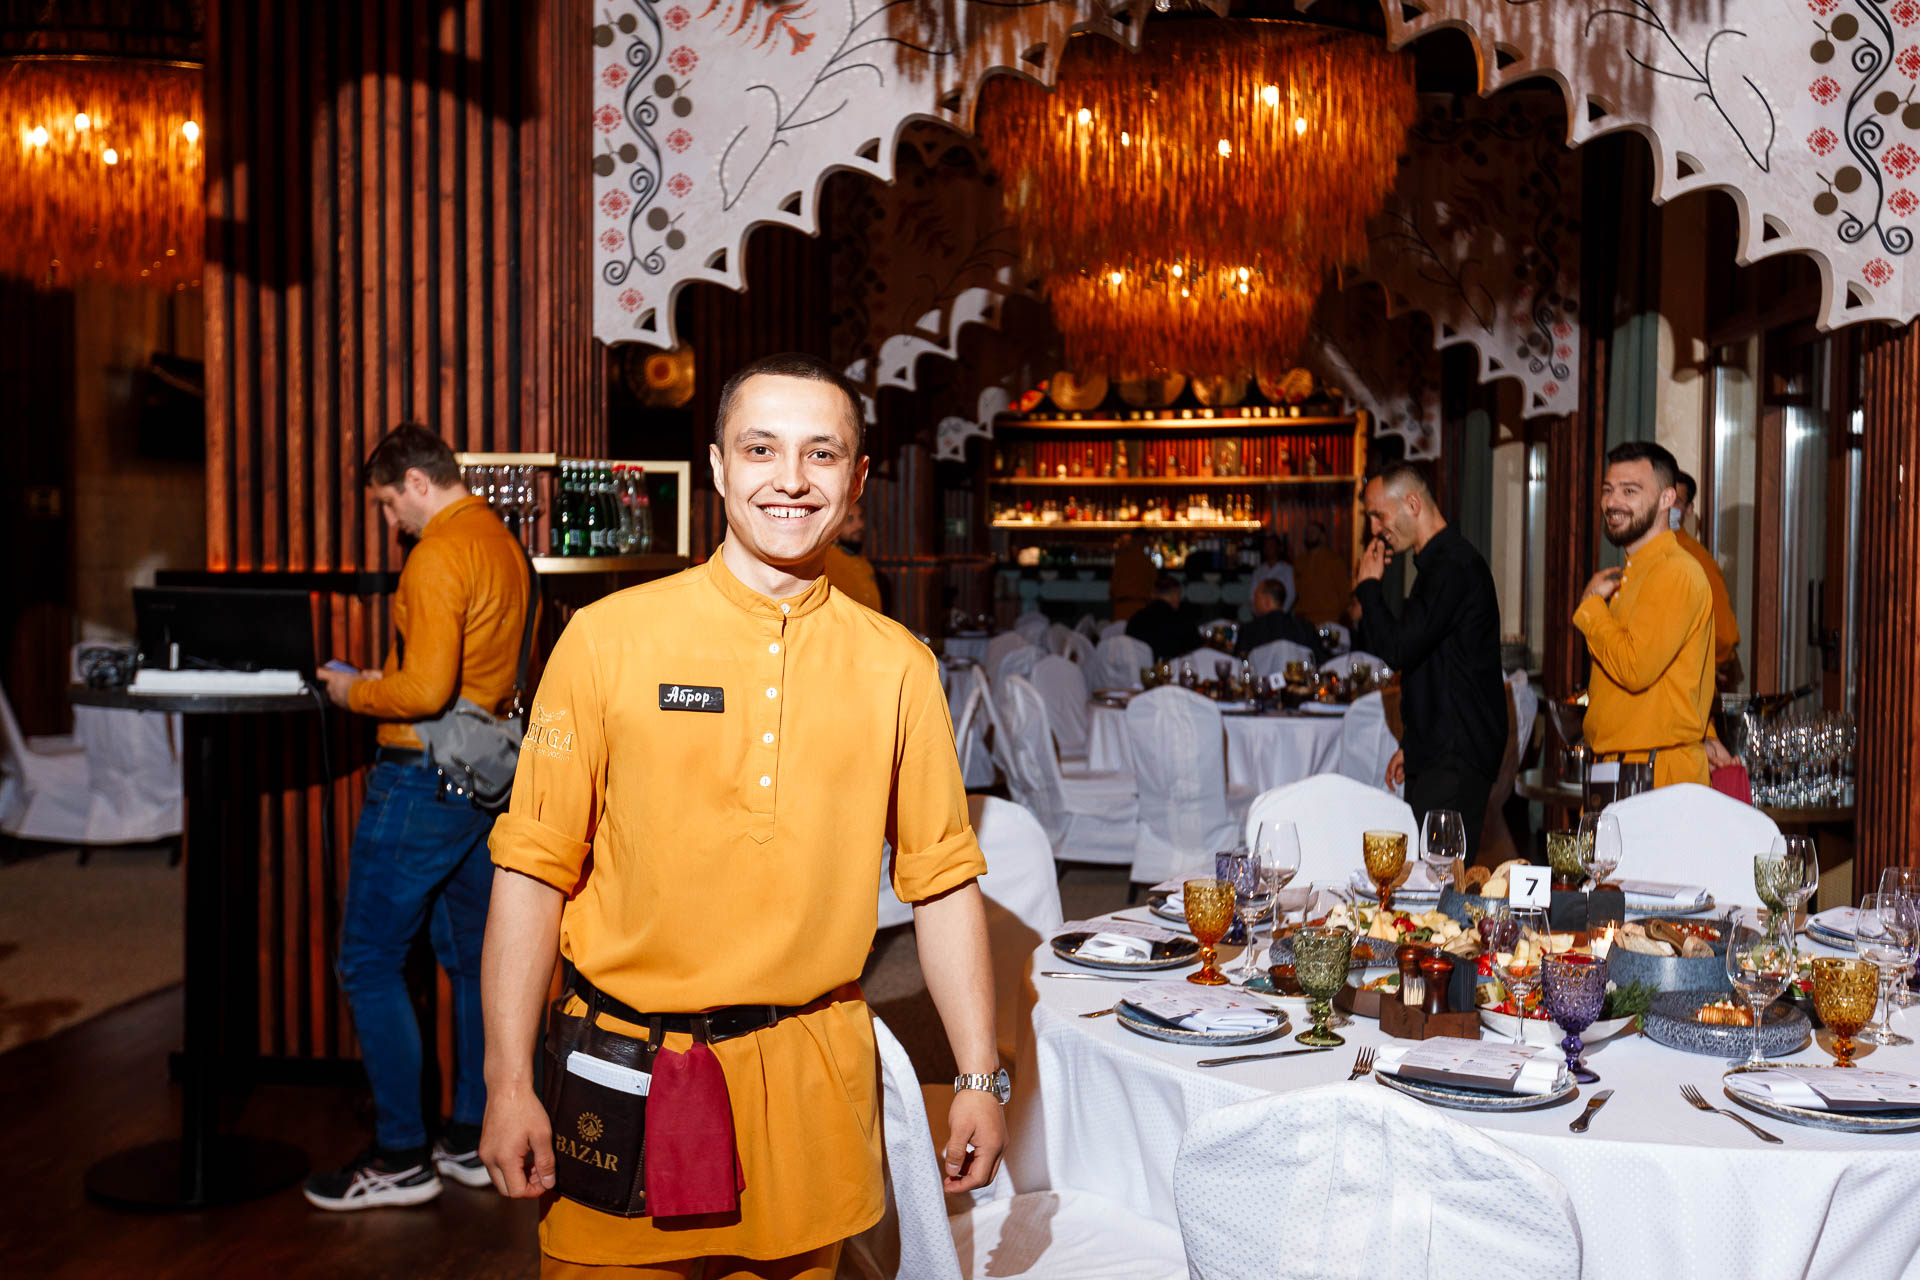 Официант в желтой униформе улыбается на камеру фотографу в ресторане the Bazar в Красной поляне